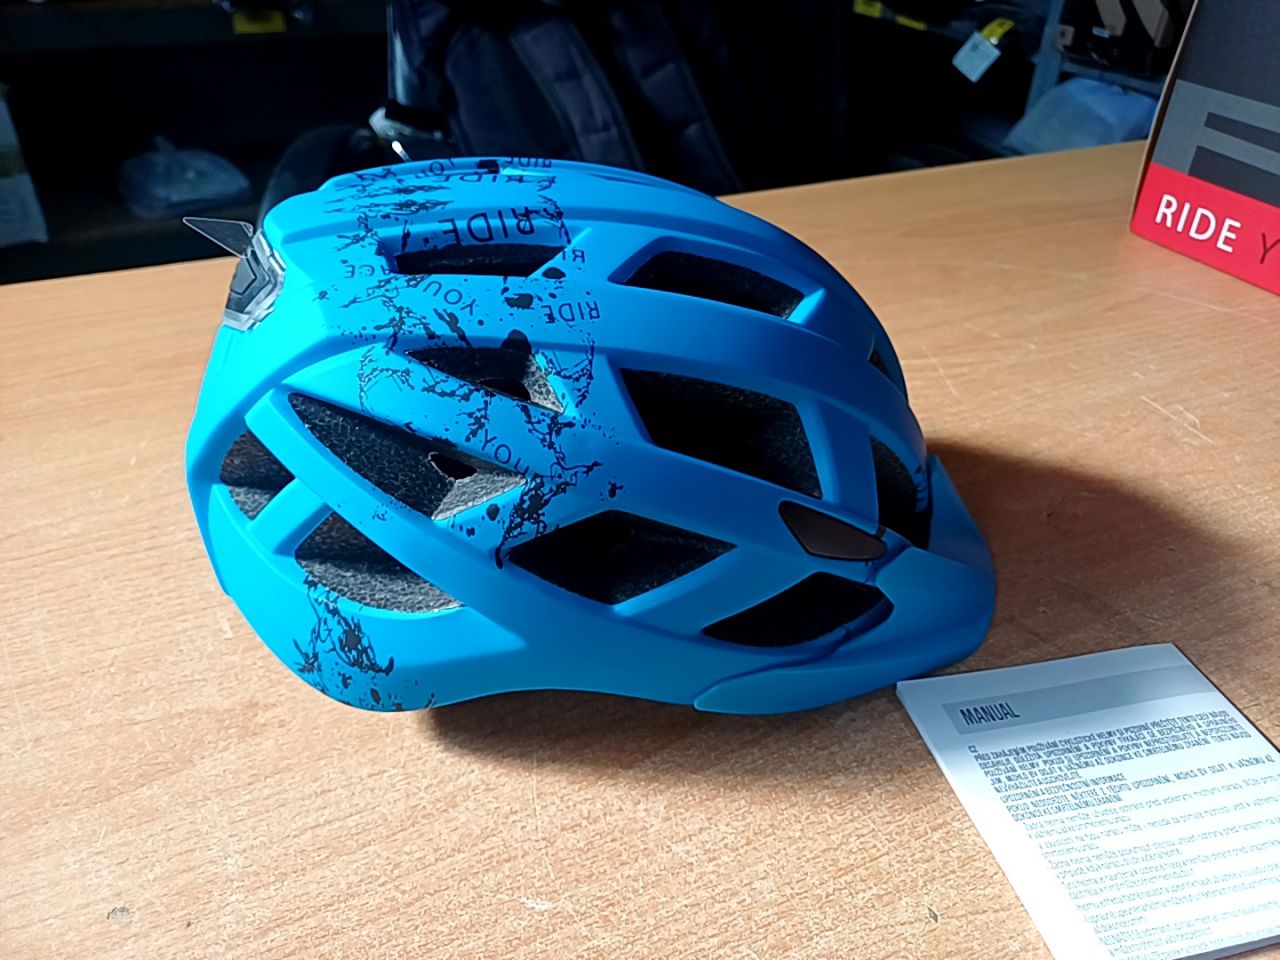 Dětská helma na kolo - modrá R2 velikost S 52-56 cm